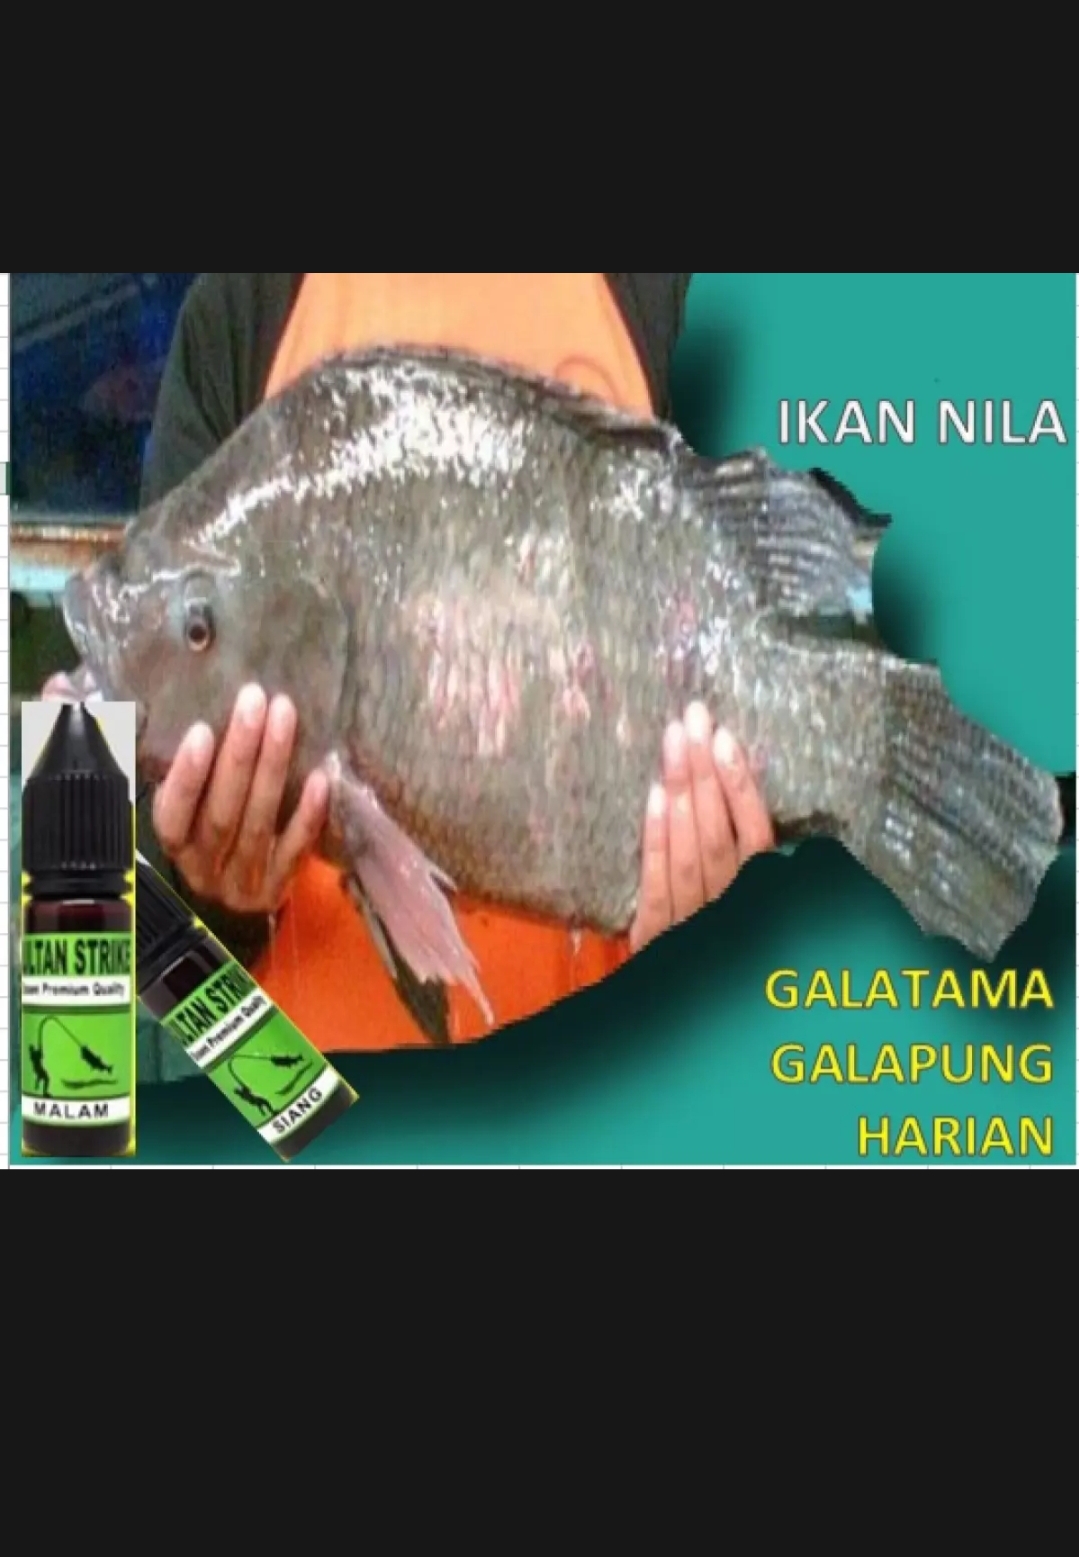 Nila "SULTAN STRIKE"Essen Premium khusus Nila,jagonya mancing ikan Nila,jago dan malam galatama,galapung dan harian | Indonesia